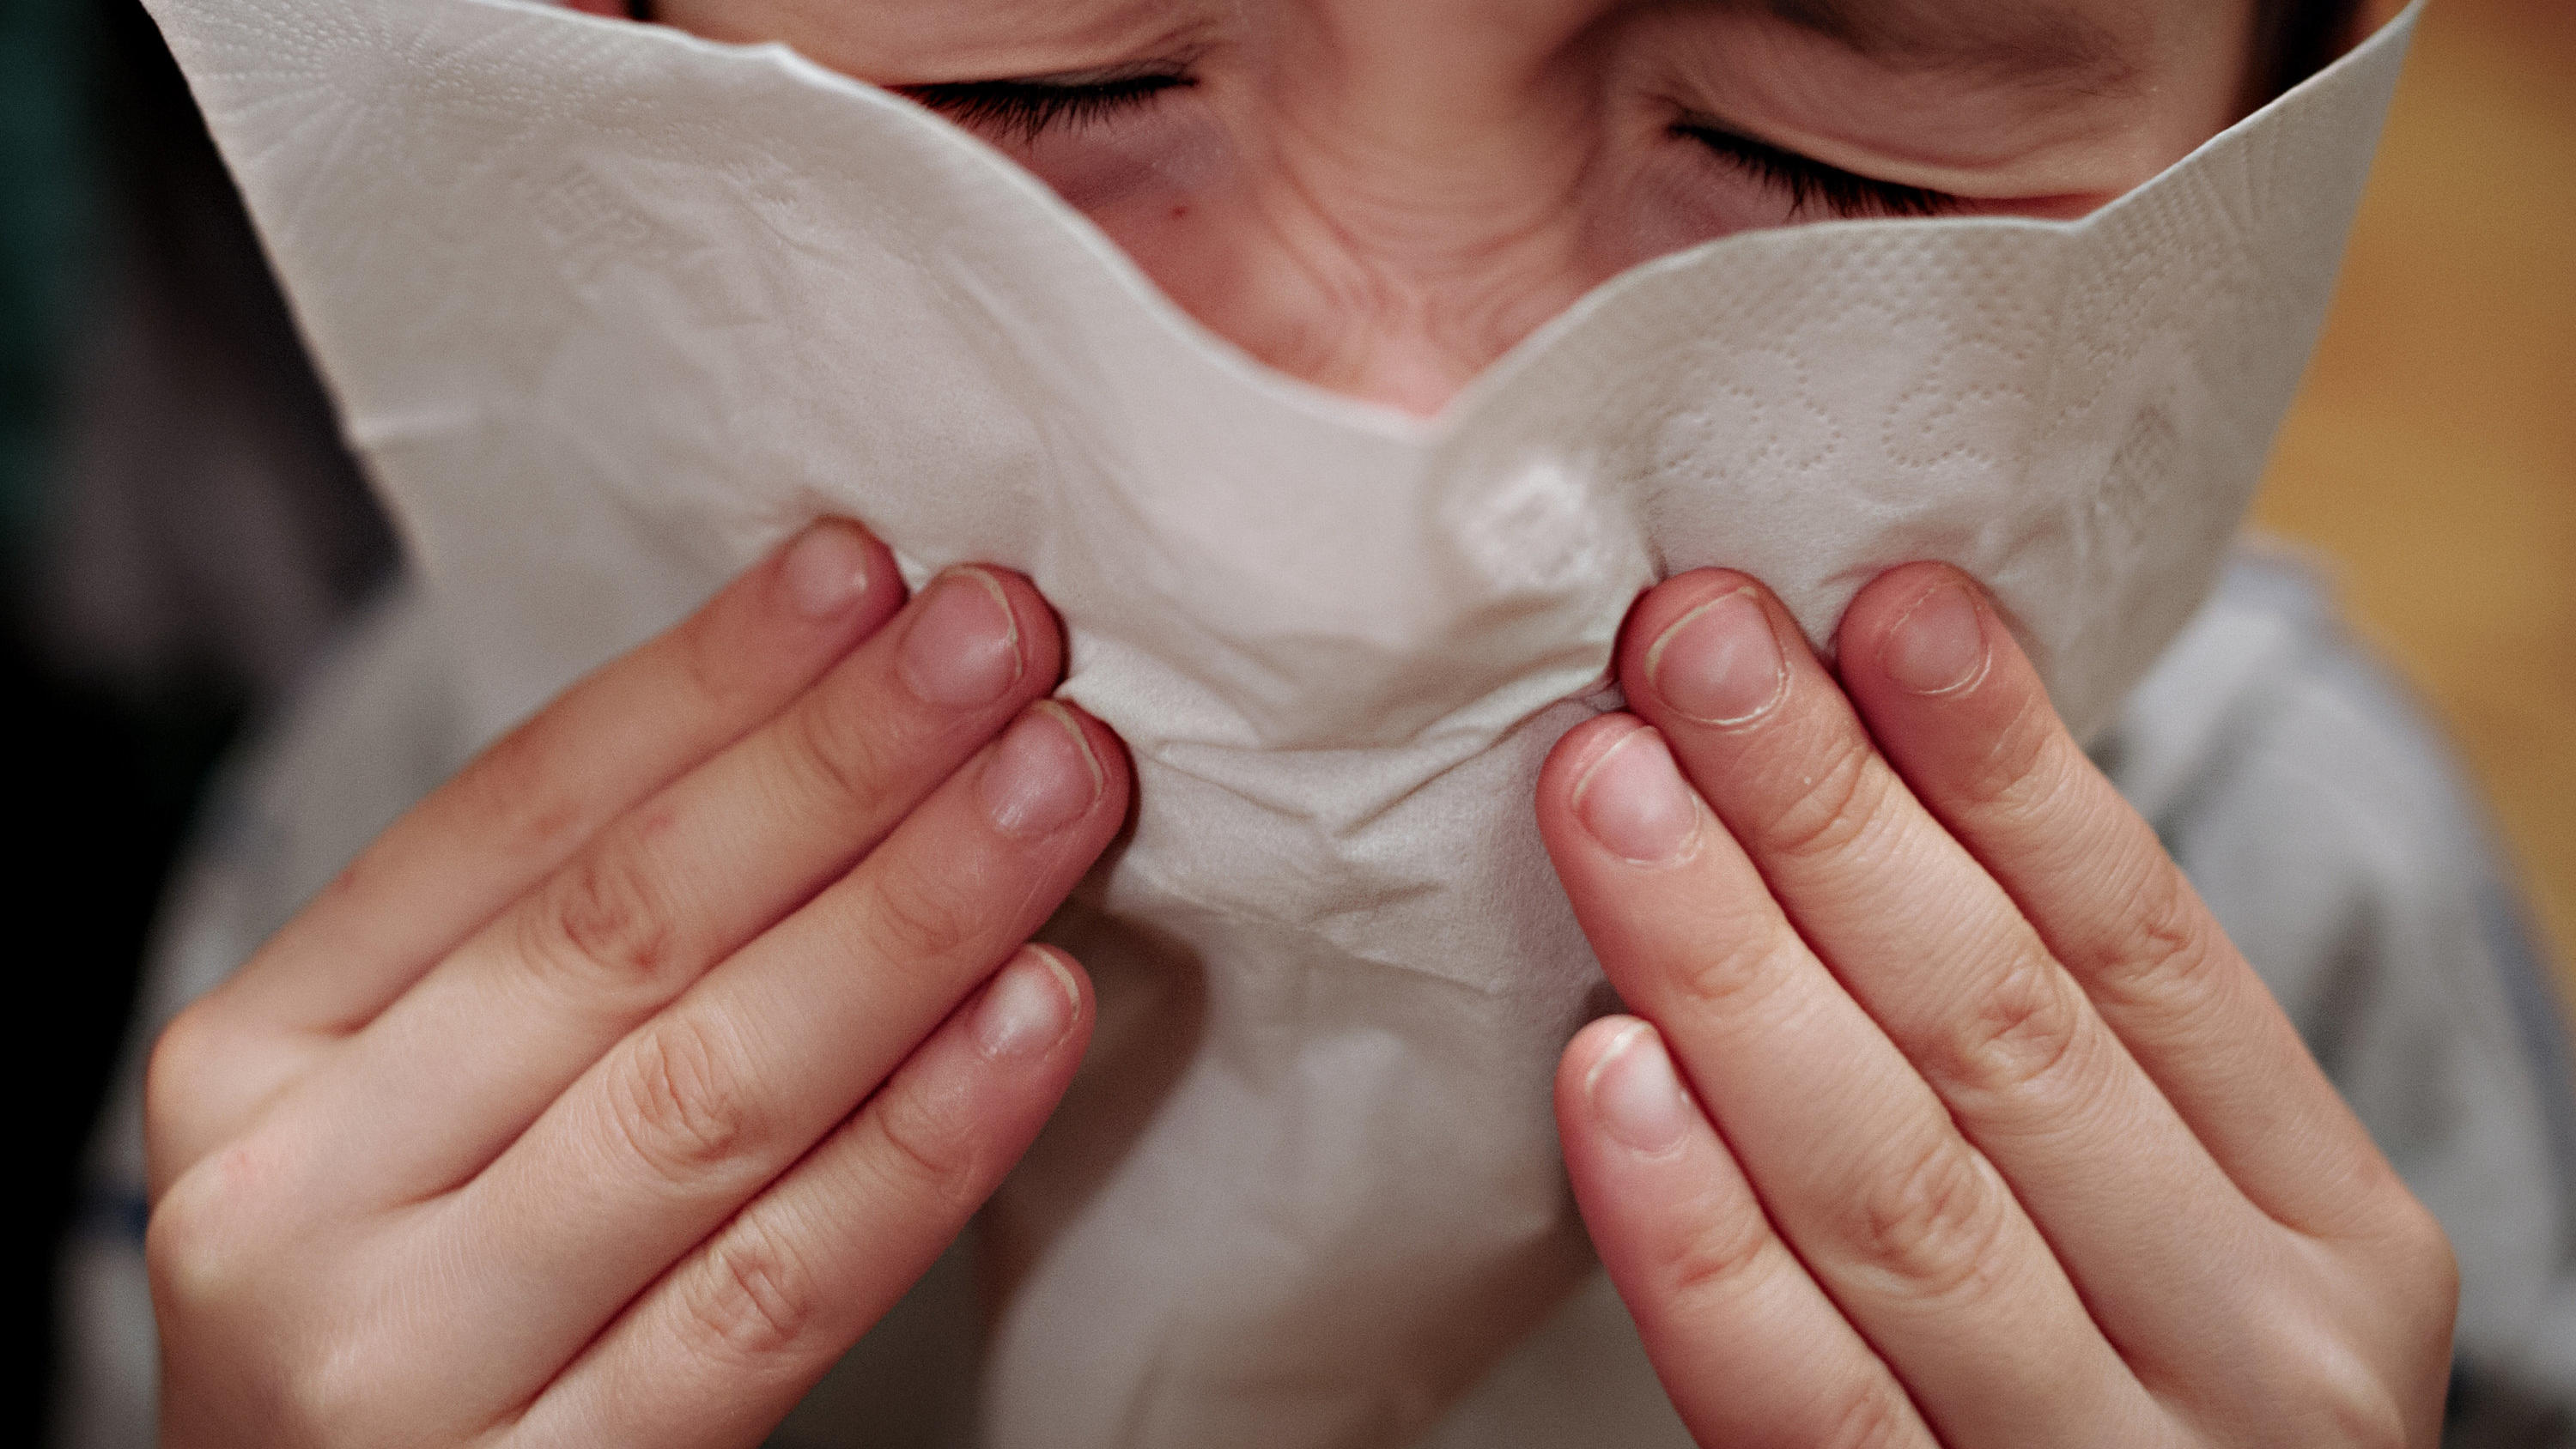 ARCHIV - 24.01.2014, Berlin: Ein kleiner Junge hält sich ein Taschentuch an die Nase. (Illustration zu "RKI: Bei Kindern aktuell häufiger Grippe als Corona diagnostiziert") Foto: Nicolas Armer/dpa +++ dpa-Bildfunk +++